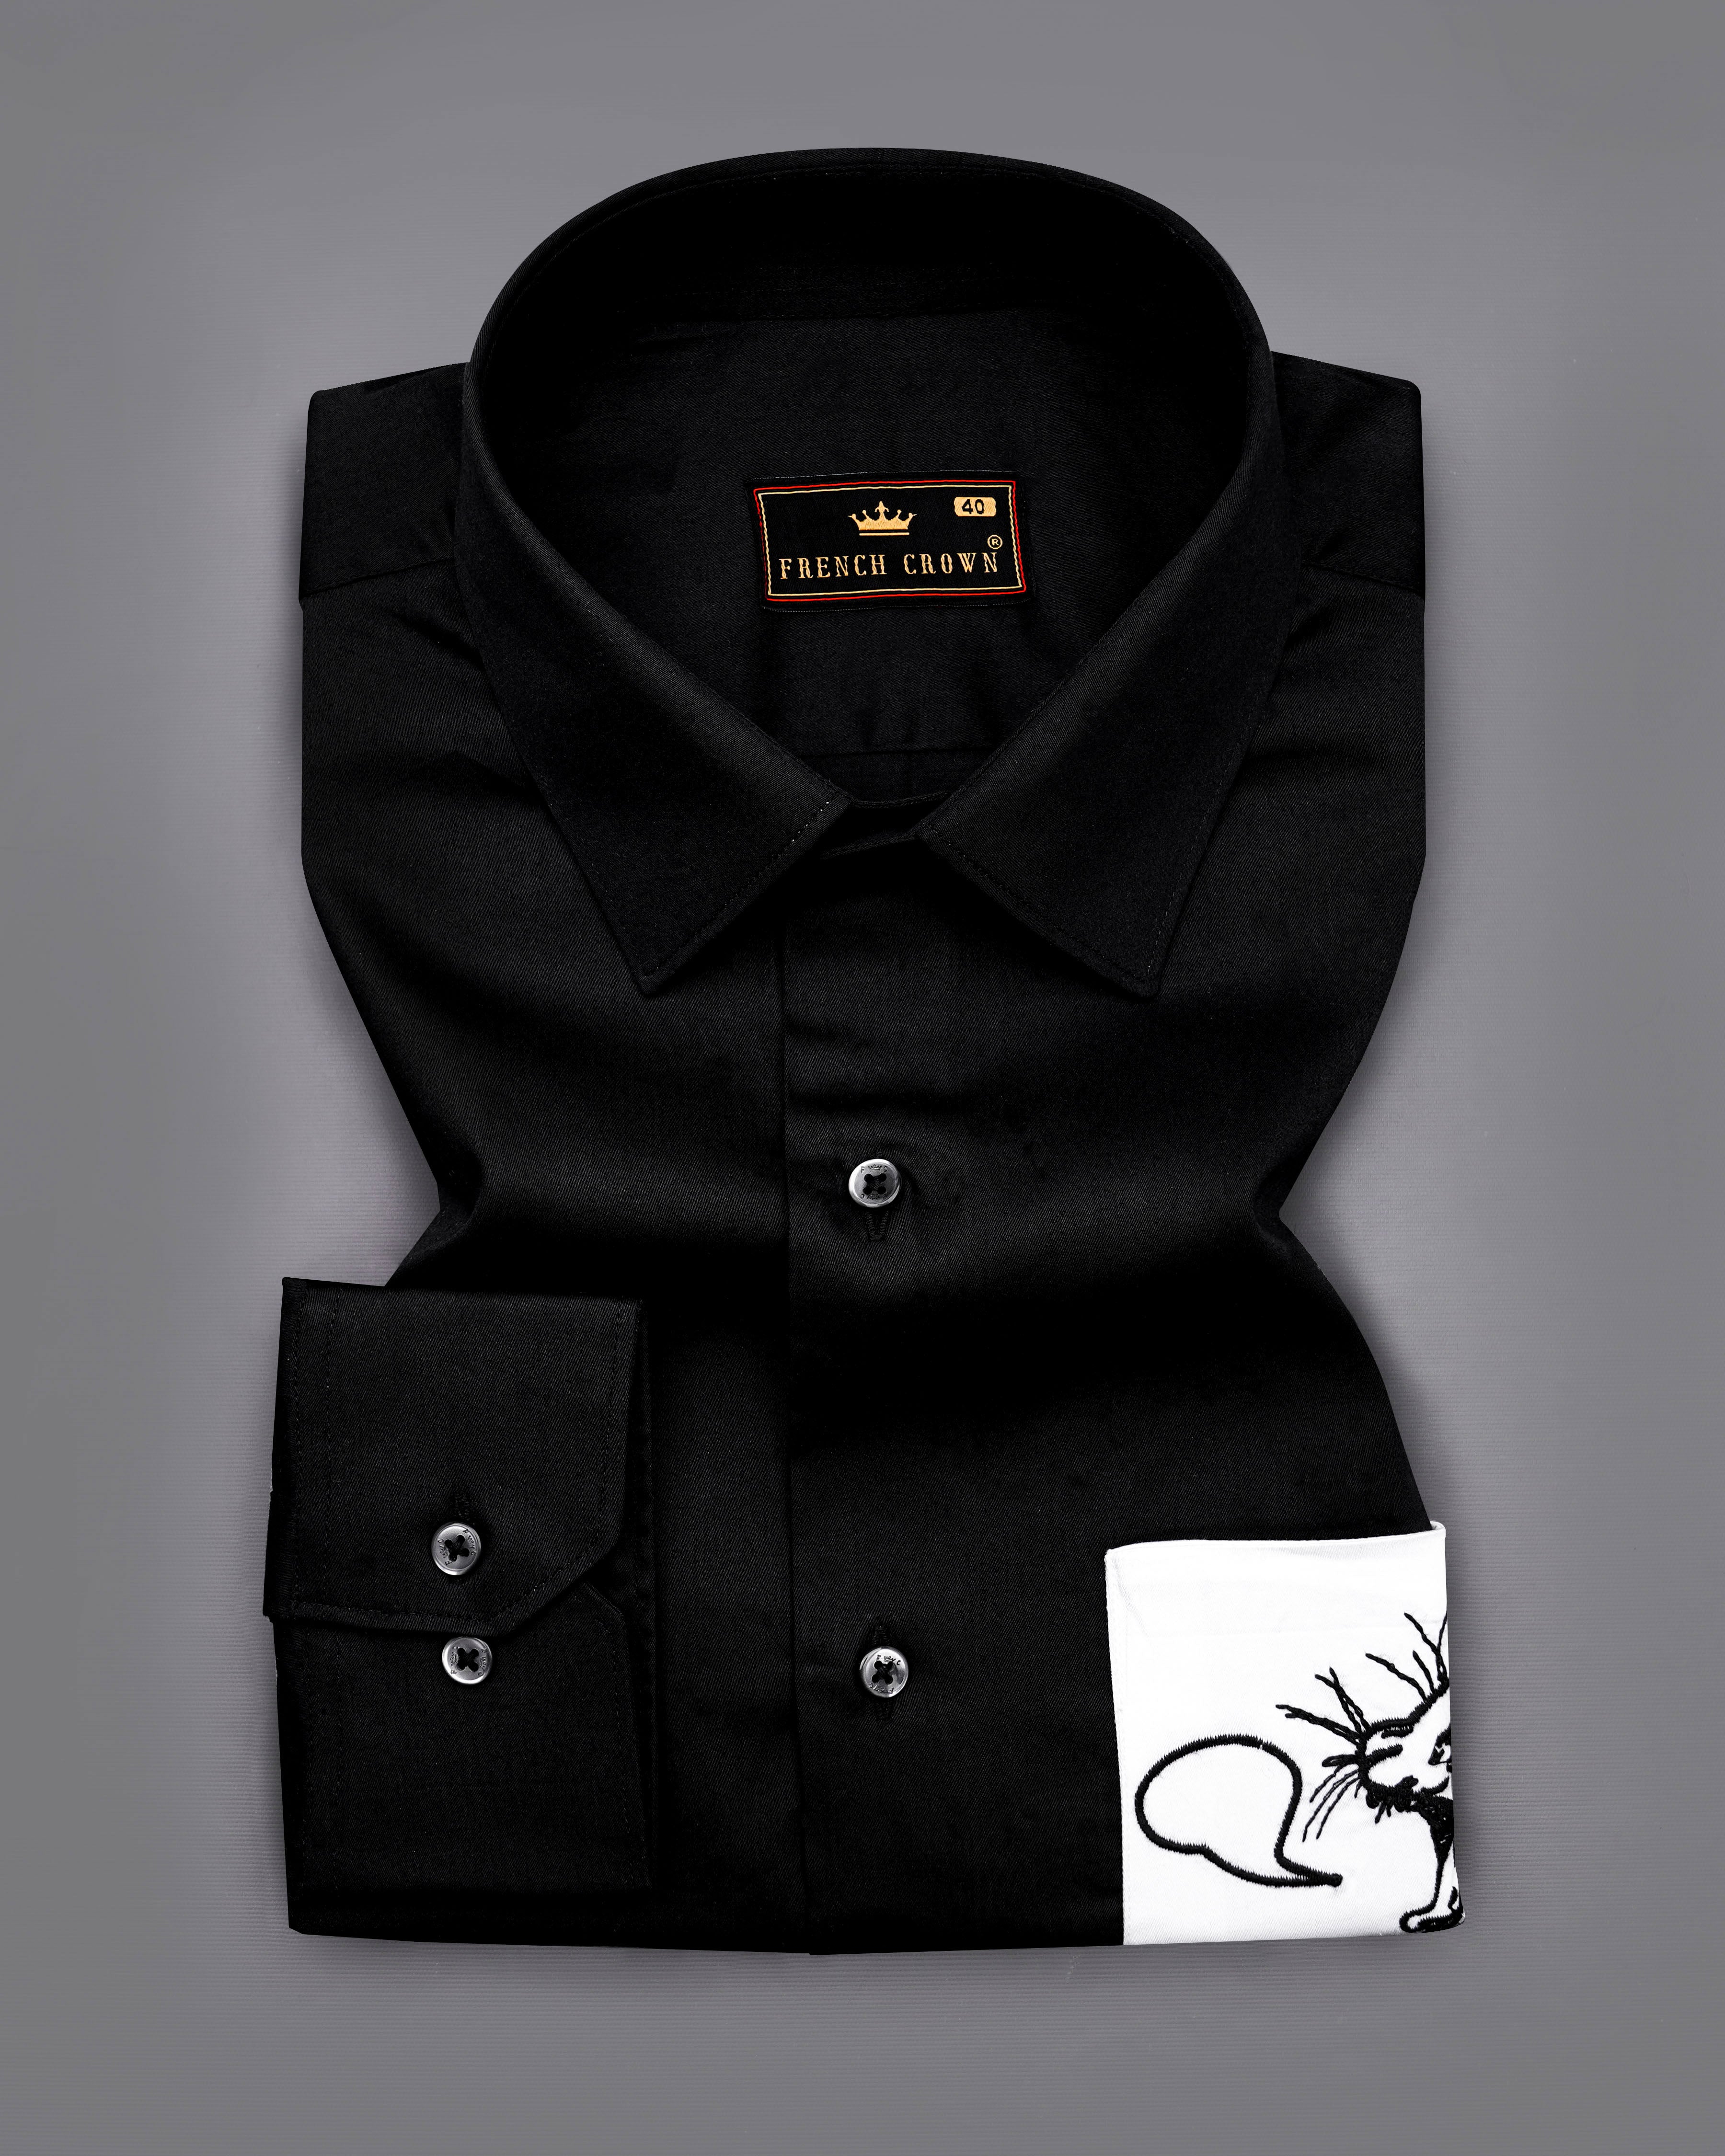 Jade Black With White Patch Pocket Cat Embroidered Super Soft Premium Cotton Shirt 1312-BLK-E001-38, 1312-BLK-E001-H-38, 1312-BLK-E001-39, 1312-BLK-E001-H-39, 1312-BLK-E001-40, 1312-BLK-E001-H-40, 1312-BLK-E001-42, 1312-BLK-E001-H-42, 1312-BLK-E001-44, 1312-BLK-E001-H-44, 1312-BLK-E001-46, 1312-BLK-E001-H-46, 1312-BLK-E001-48, 1312-BLK-E001-H-48, 1312-BLK-E001-50, 1312-BLK-E001-H-50, 1312-BLK-E001-52, 1312-BLK-E001-H-52